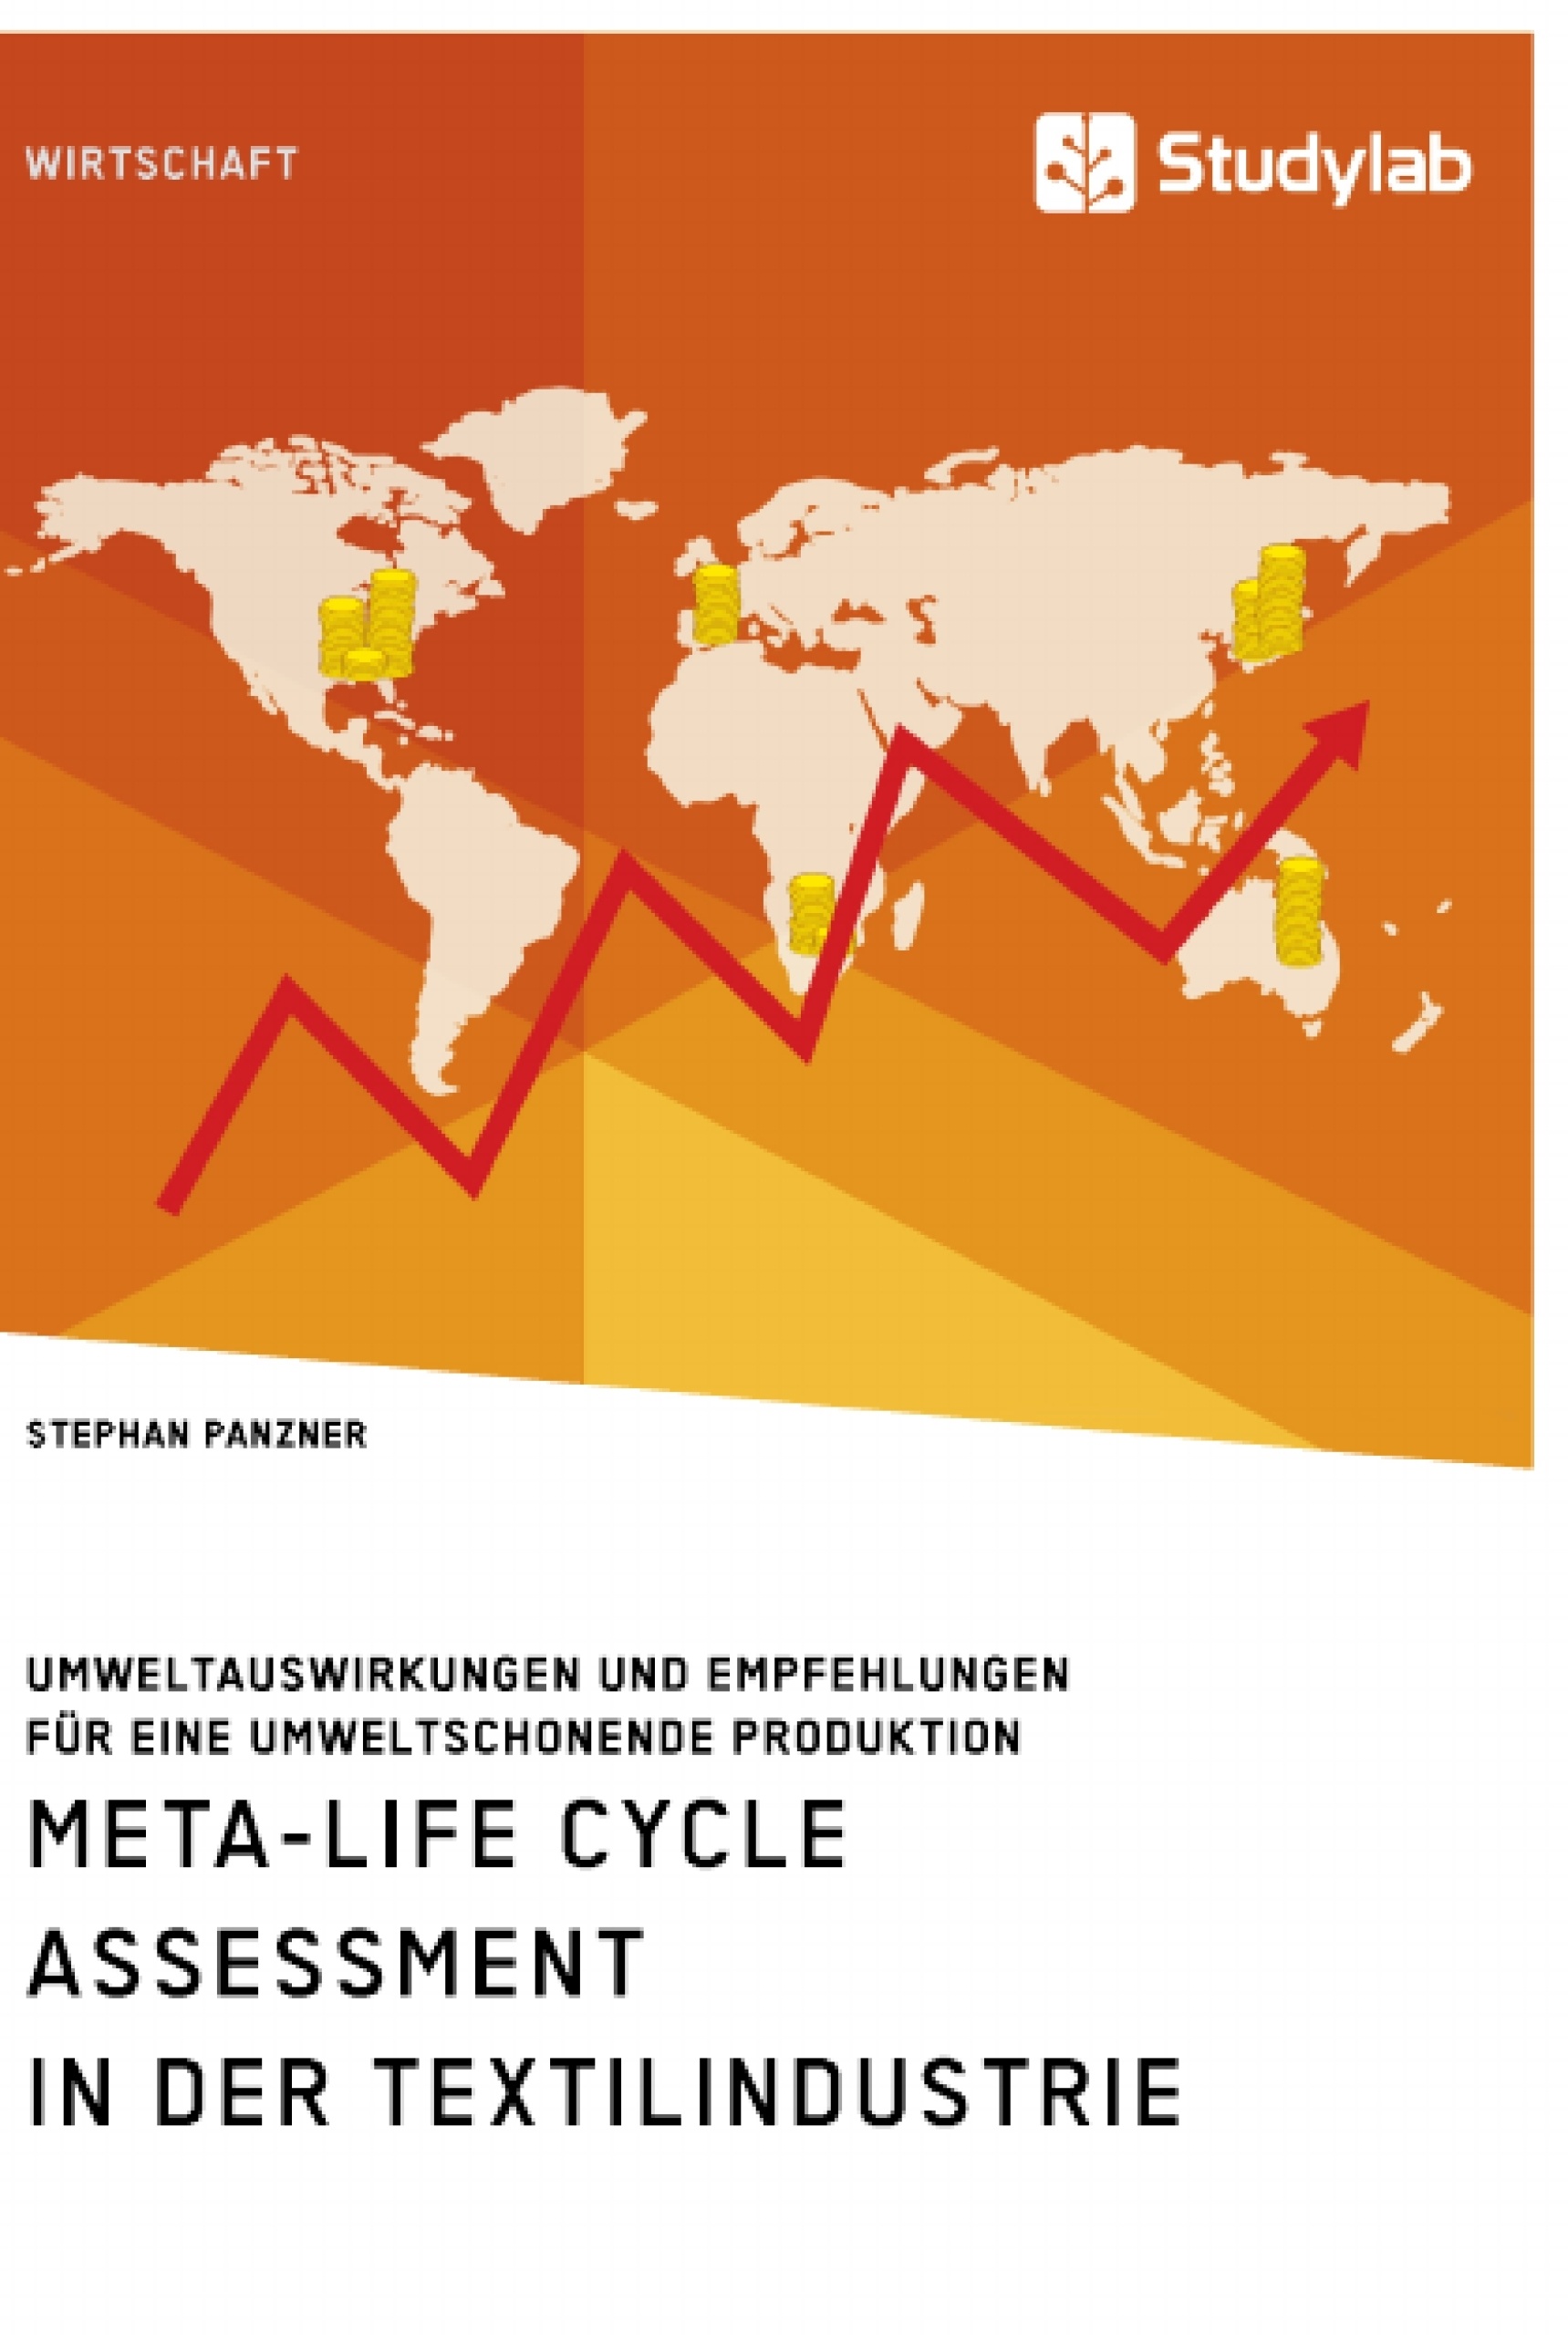 Titre: Meta-Life Cycle Assessment in der Textilindustrie. Umweltauswirkungen und Empfehlungen für eine umweltschonende Produktion